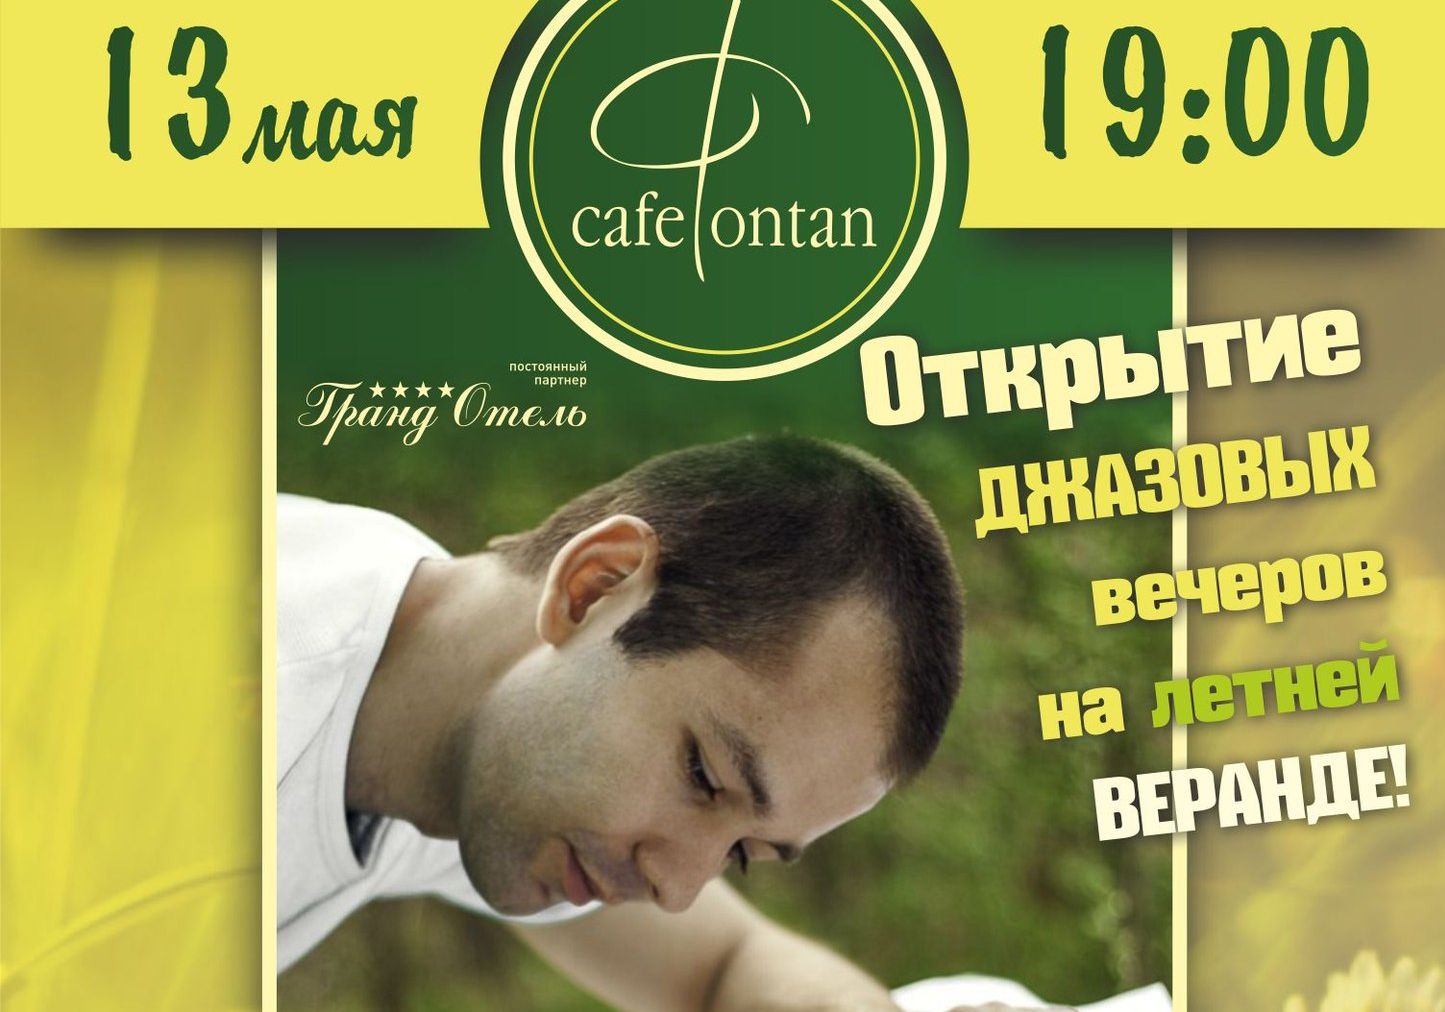 Кафе «Фонтан» запустит концерты на летней веранде